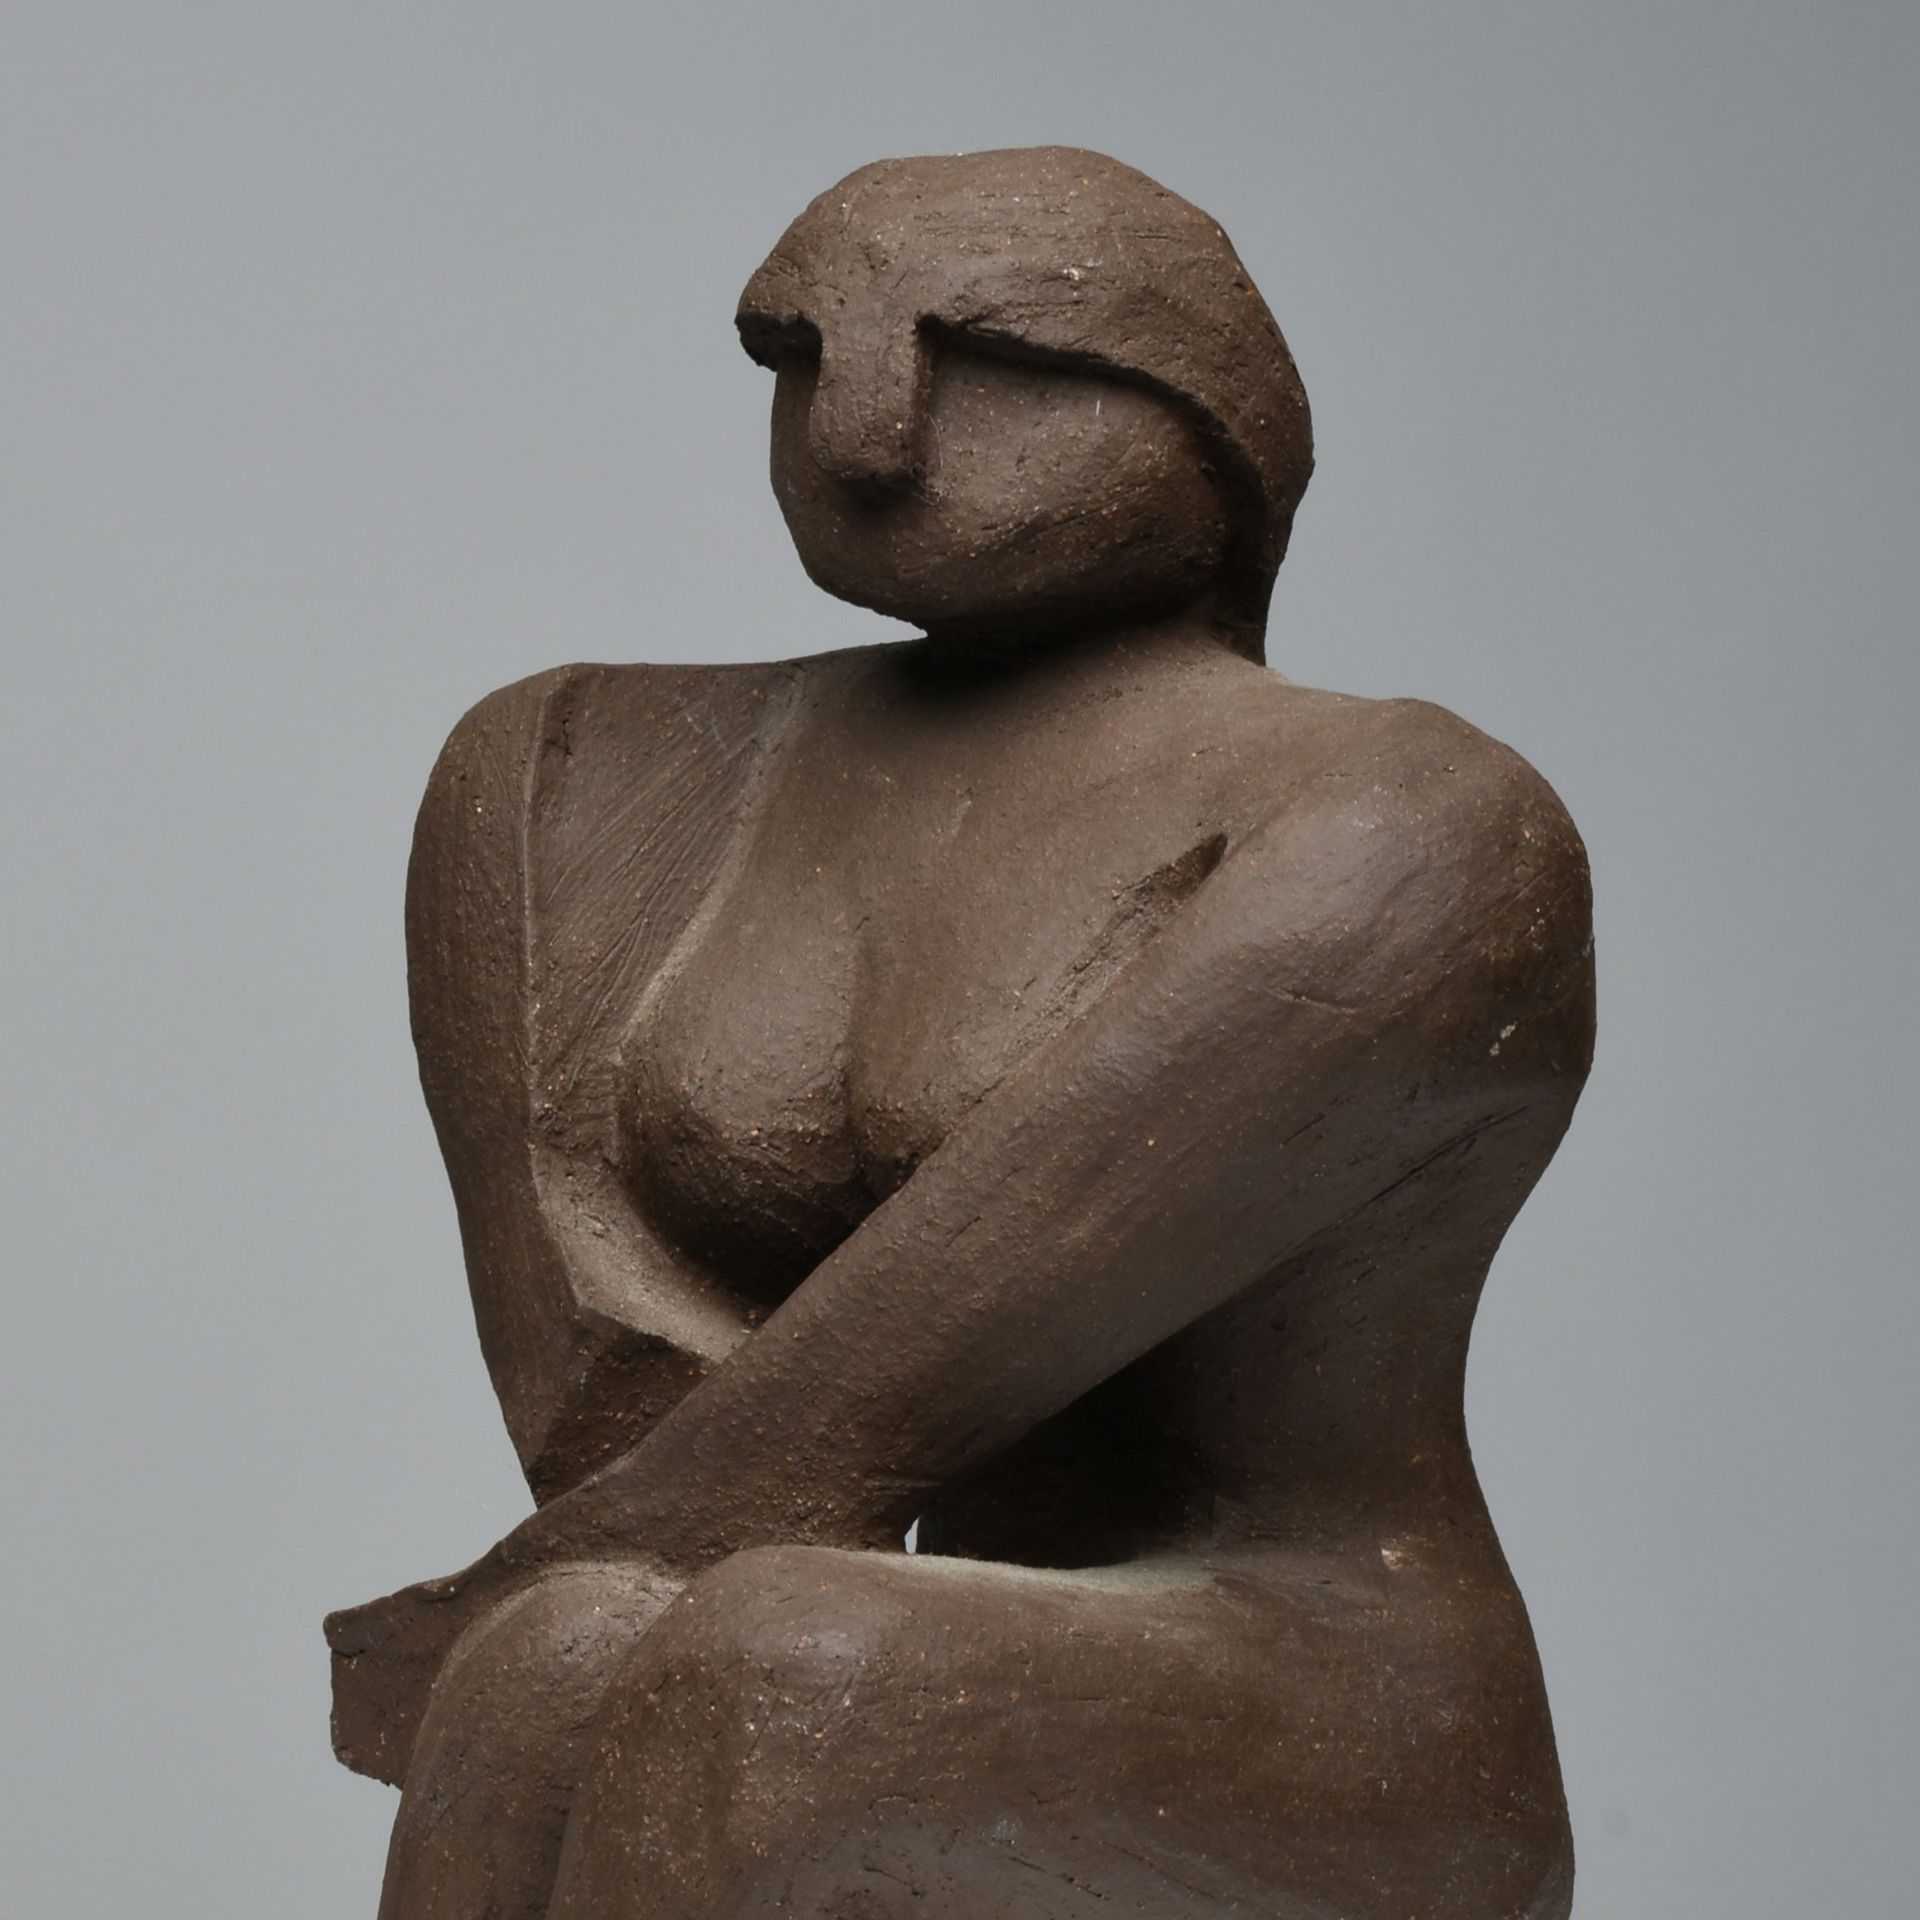 Sitzender Akt Keramik, dunkelbraun glasiert, abstrahierte Aktdarstellung einer sitzenden Frau,